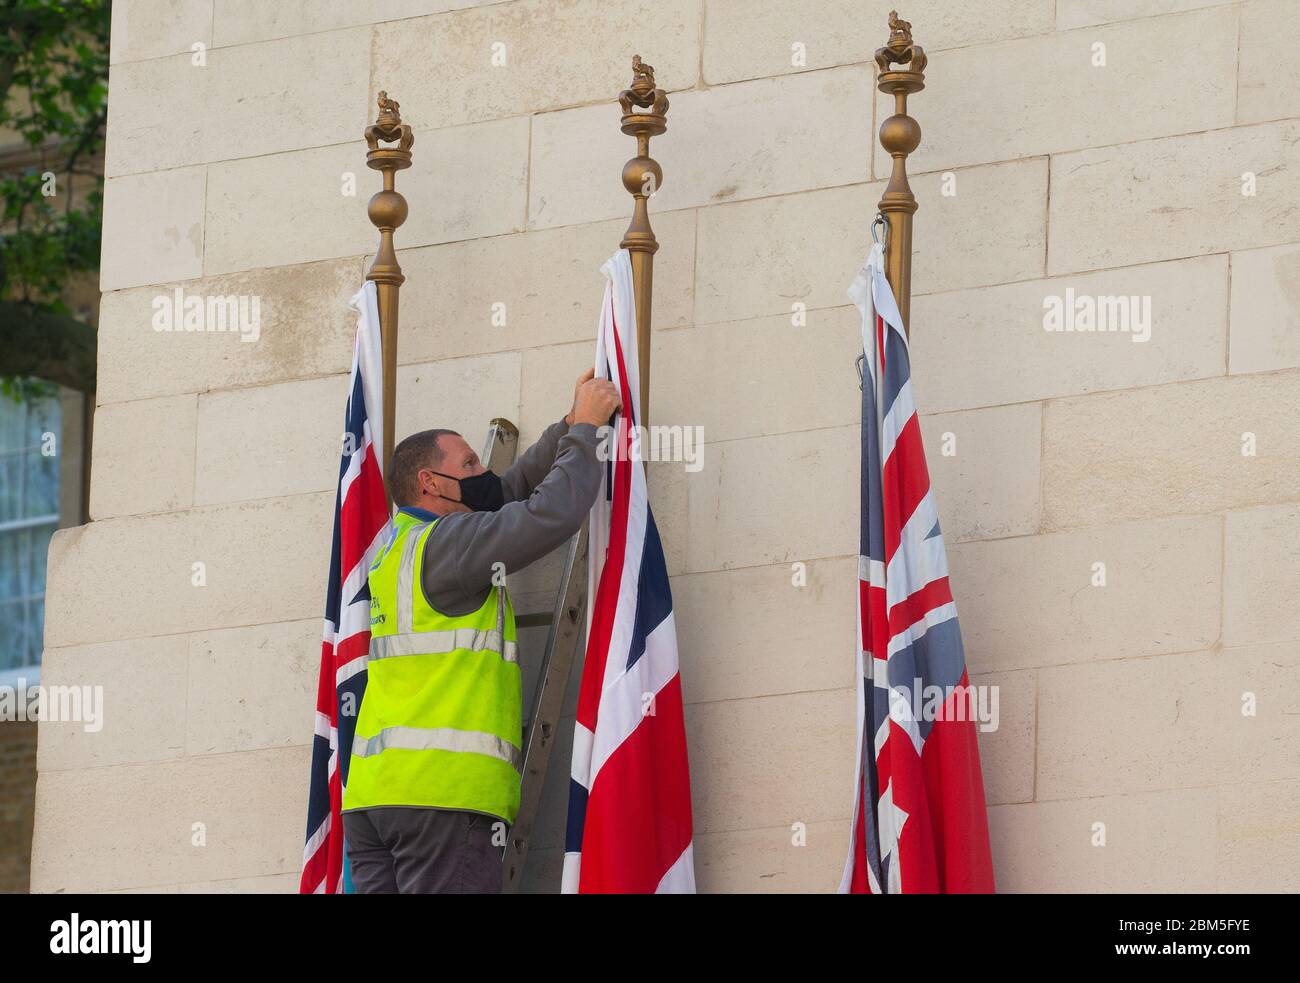 London, Großbritannien. Mai 2020. Arbeiter wechseln die Flaggen auf dem Cenotaph in Whitehall zur Vorbereitung auf den 75. Jahrestag des VE-Tages. Der Sieg am Euope Day wird am 8. Mai gefeiert. Quelle: Mark Thomas/Alamy Live News Stockfoto